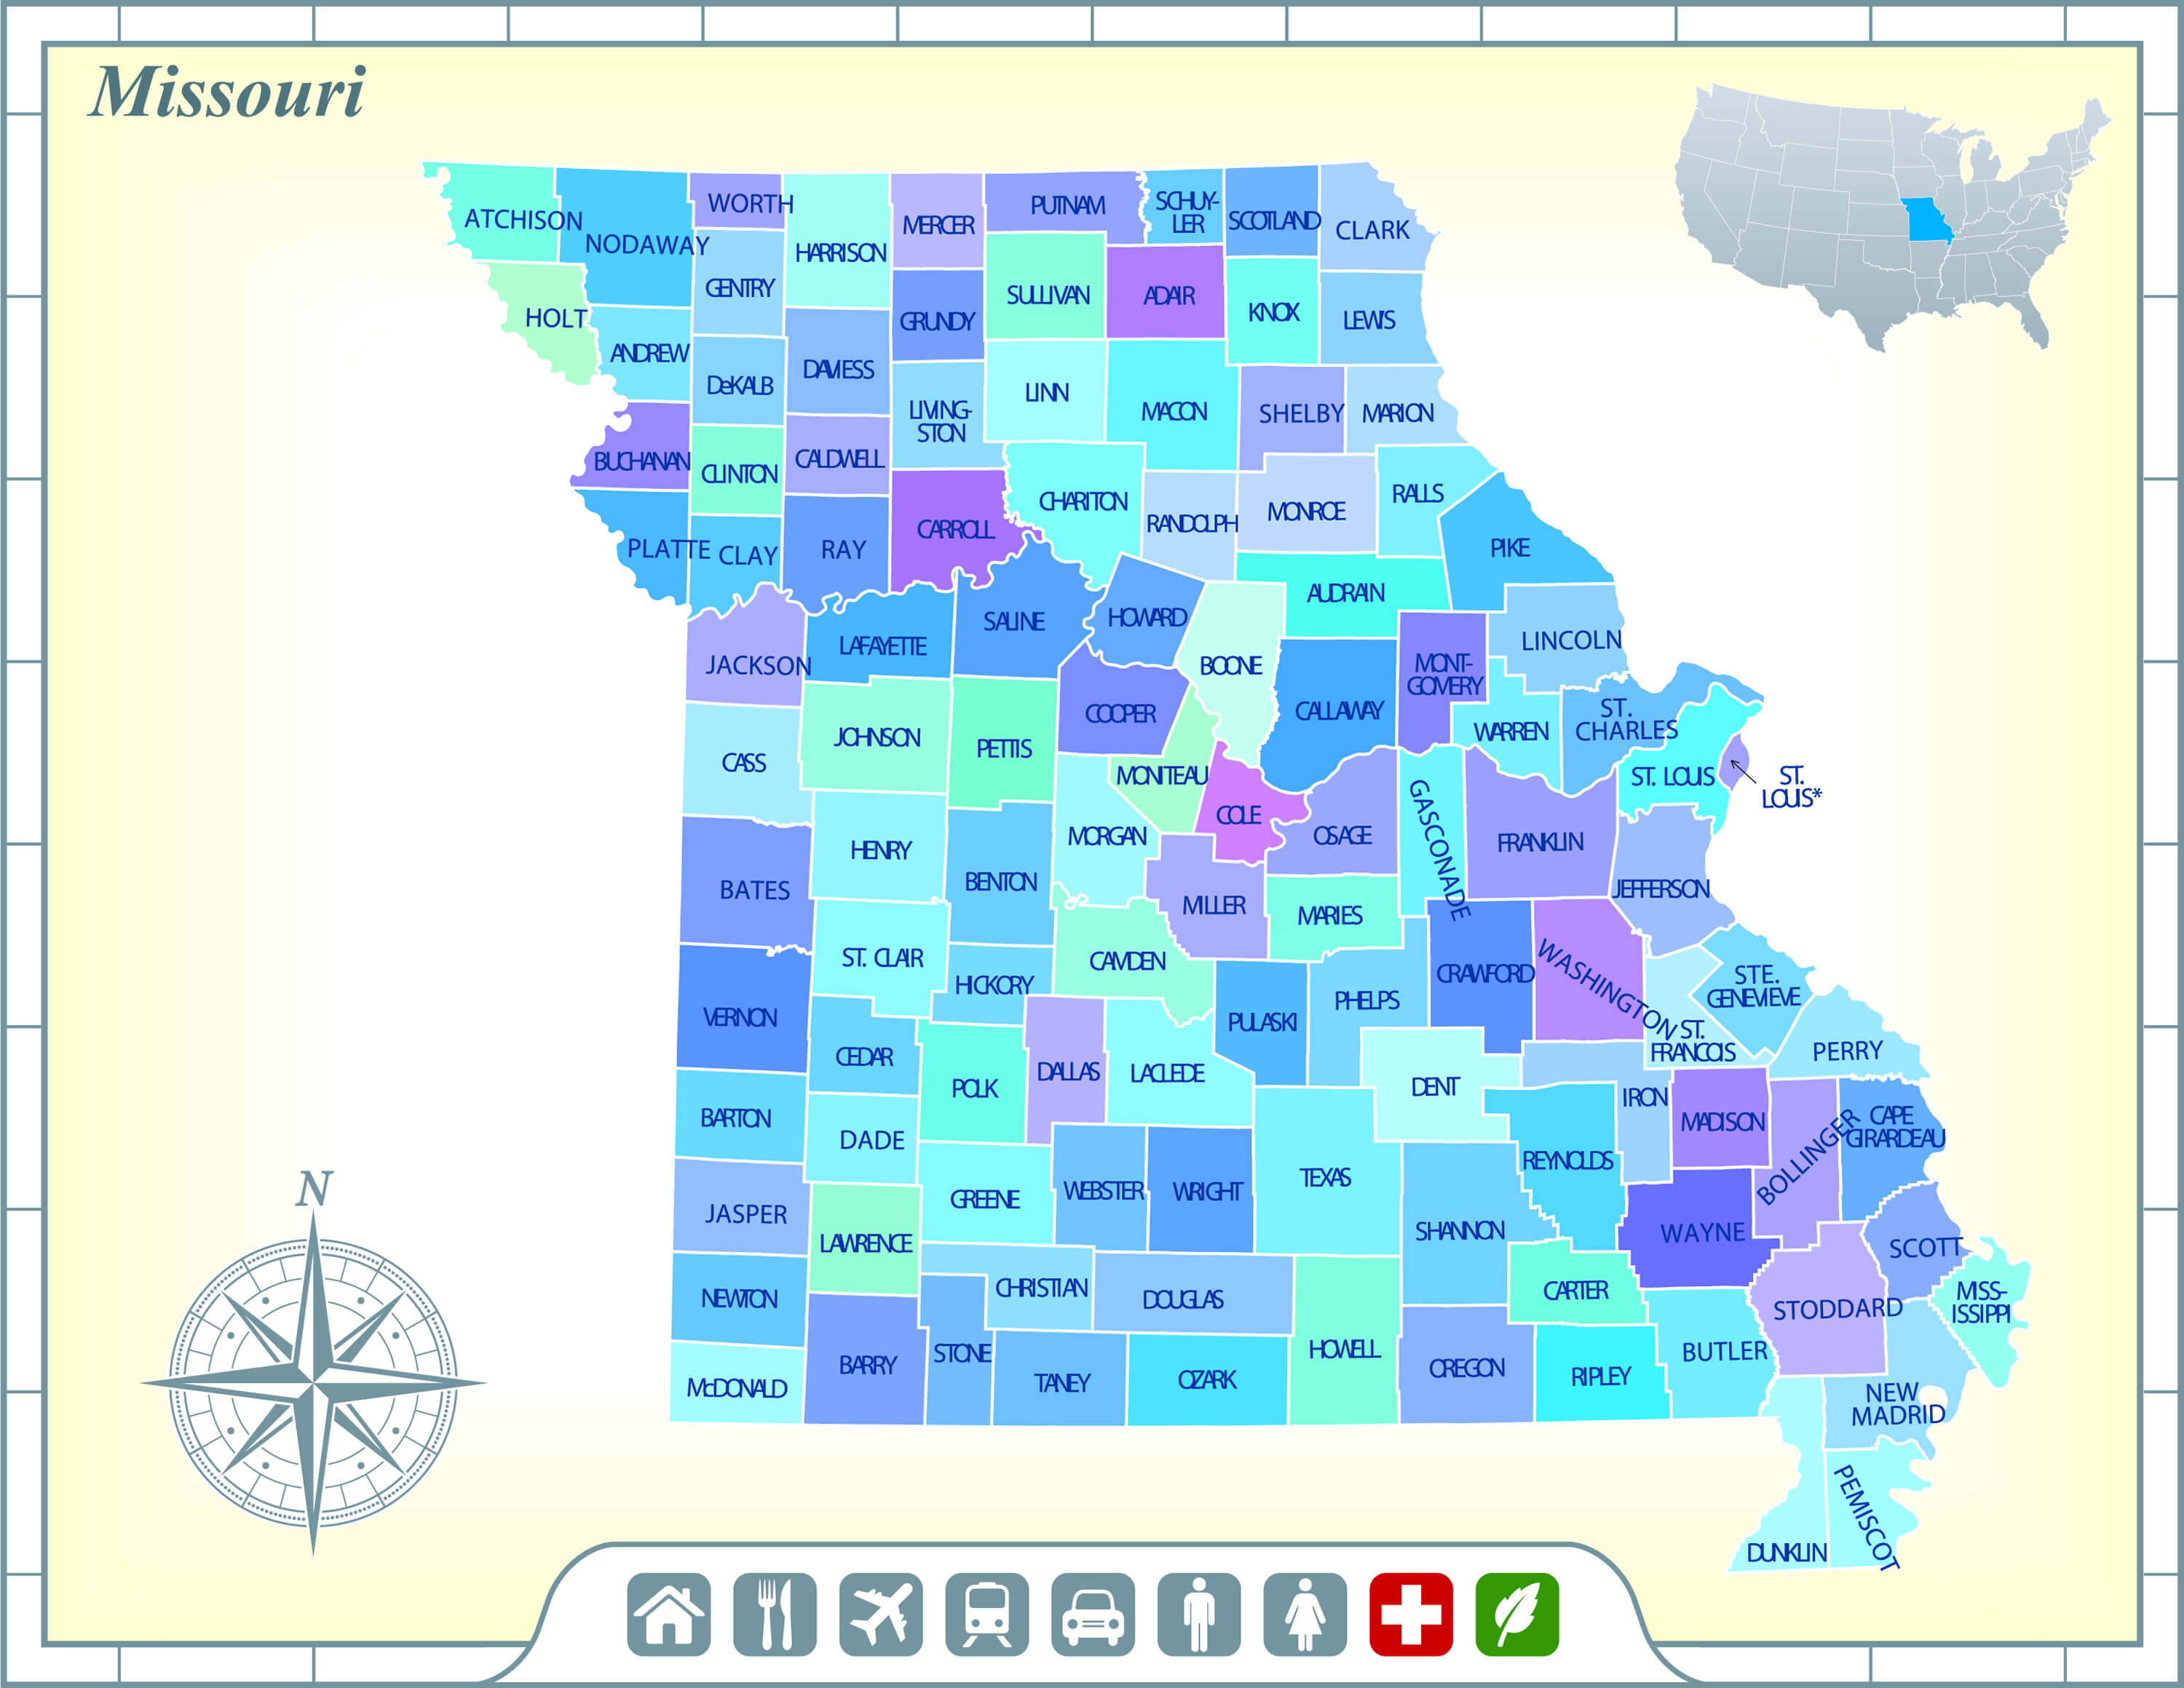 Missouri state map